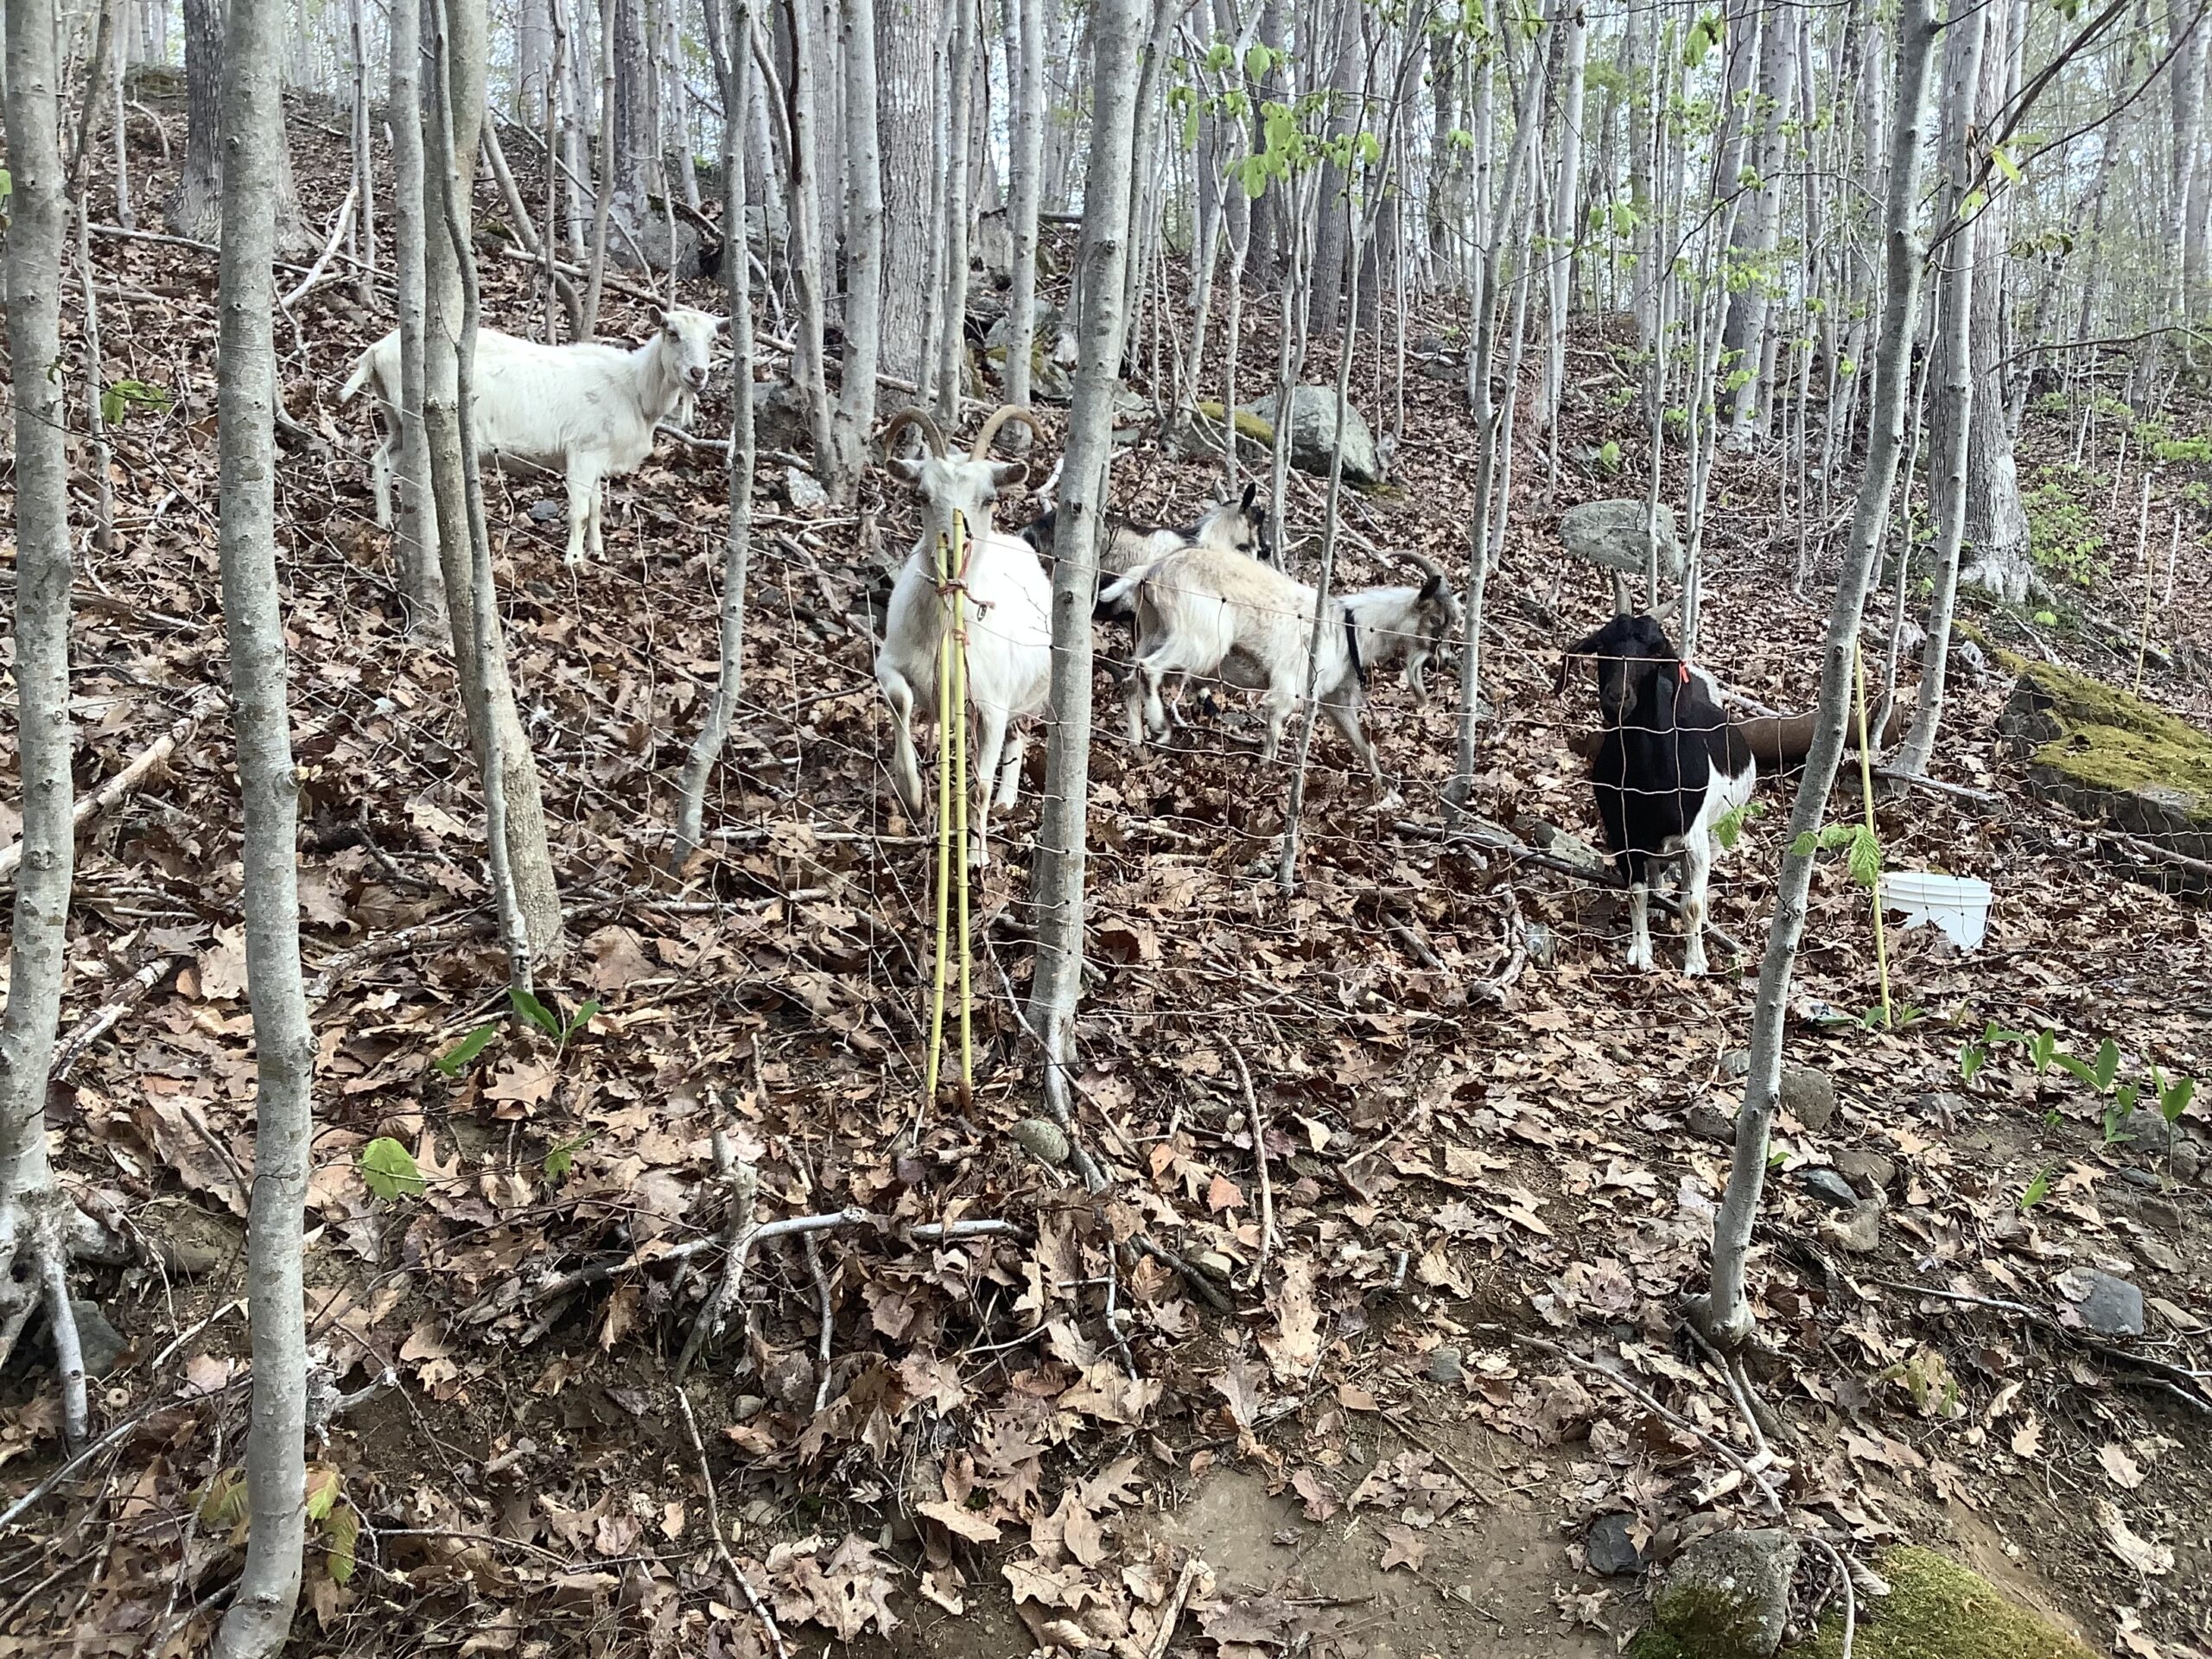 Milking Woodland Pastured Goats